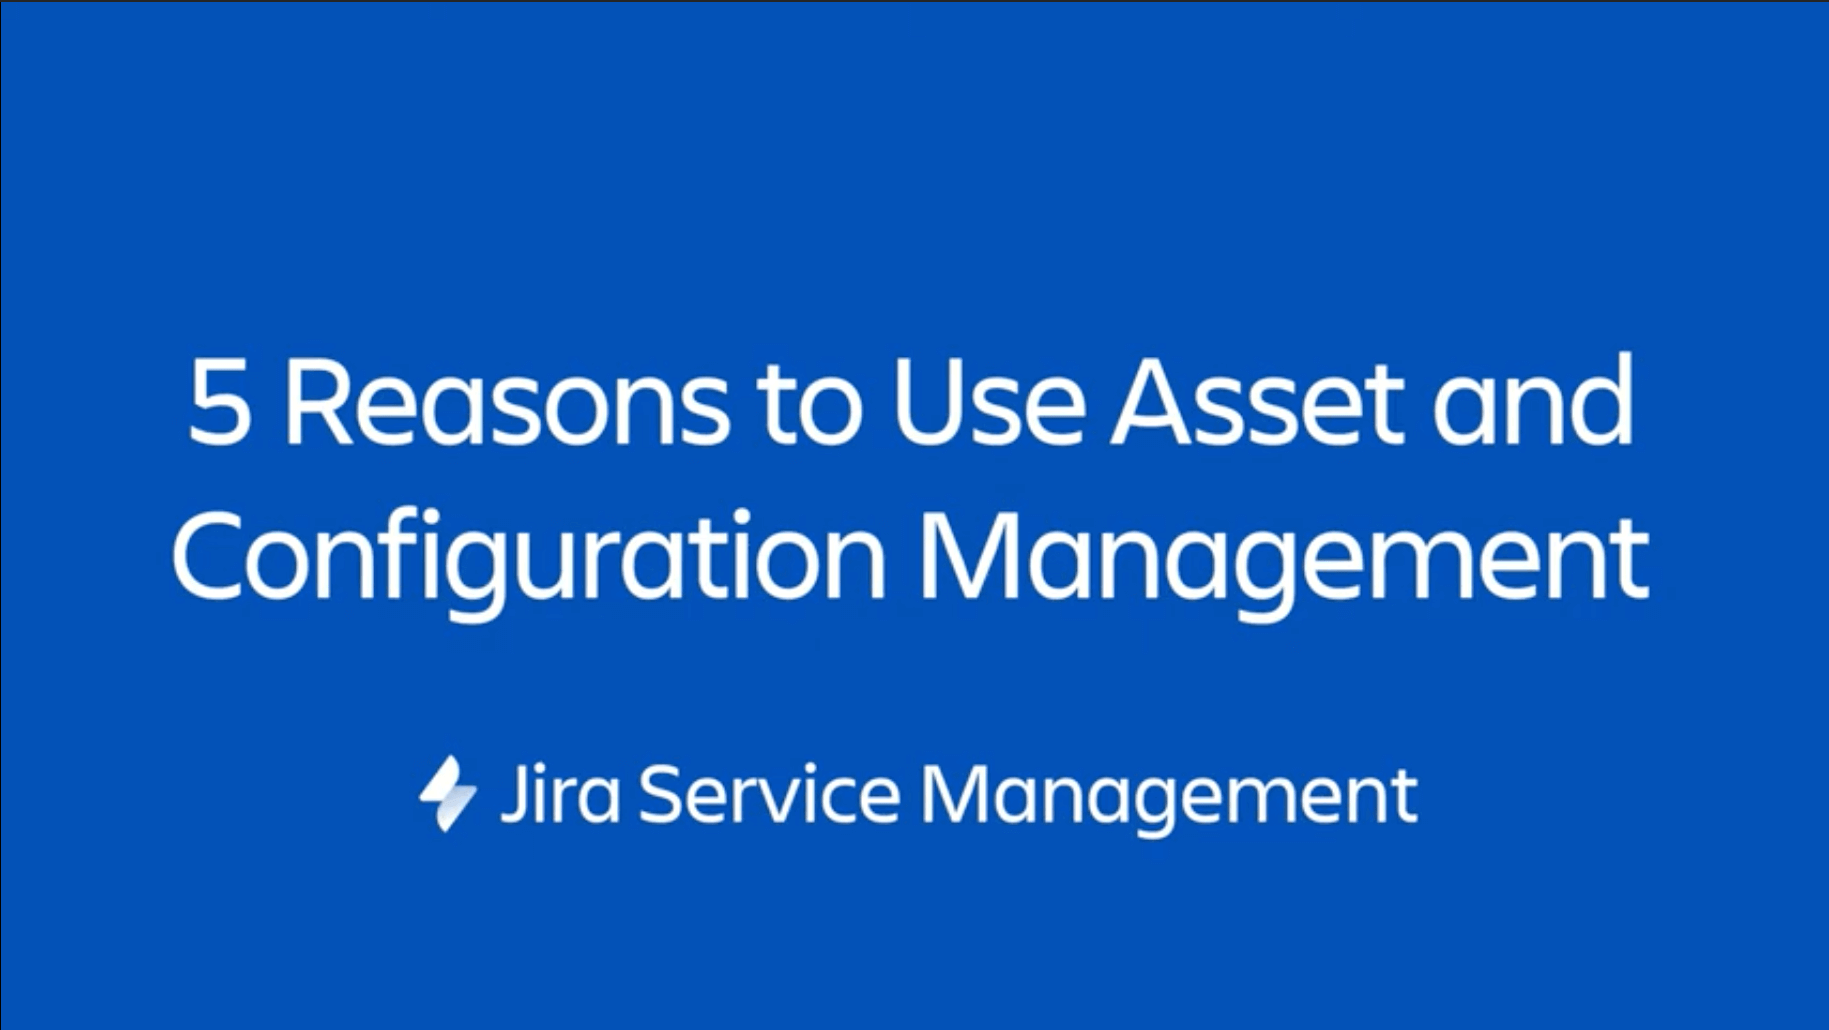 Решение Jira Service Management выводит Jira Software на новый уровень